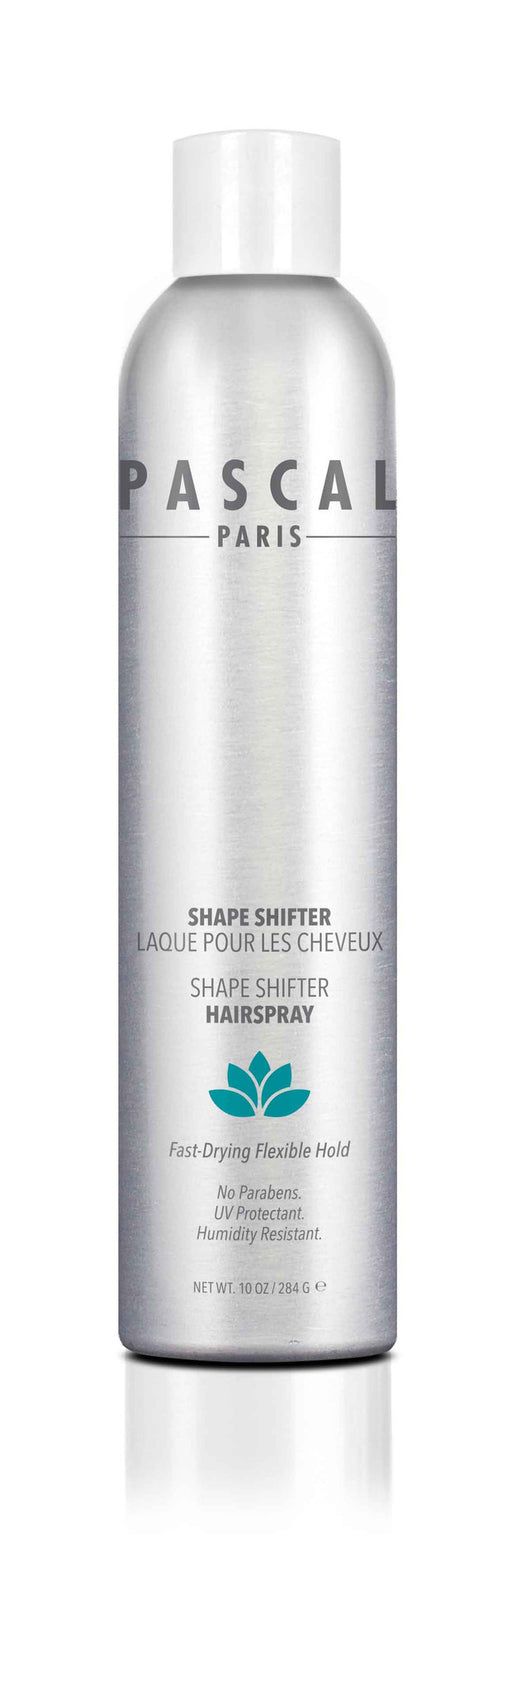 Shape Shifter Hairspray